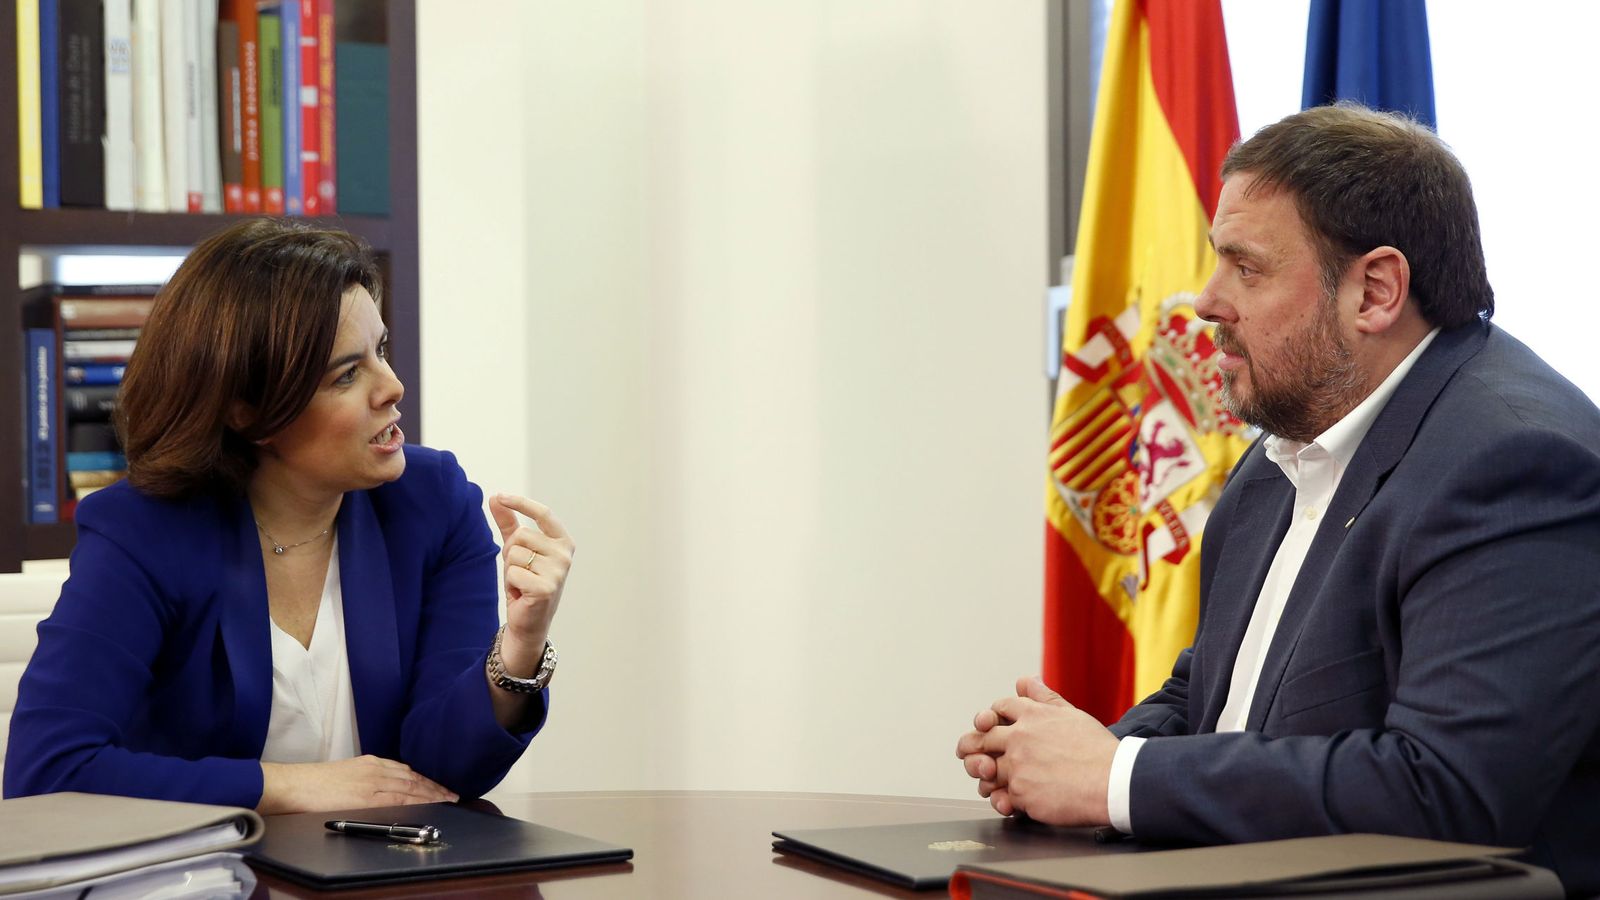 Foto: La vicepresidenta del Gobierno, Soraya Sáenz de Santamaría, reunida con el vicepresidente catalán y líder de ERC, Oriol Junqueras. (EFE)